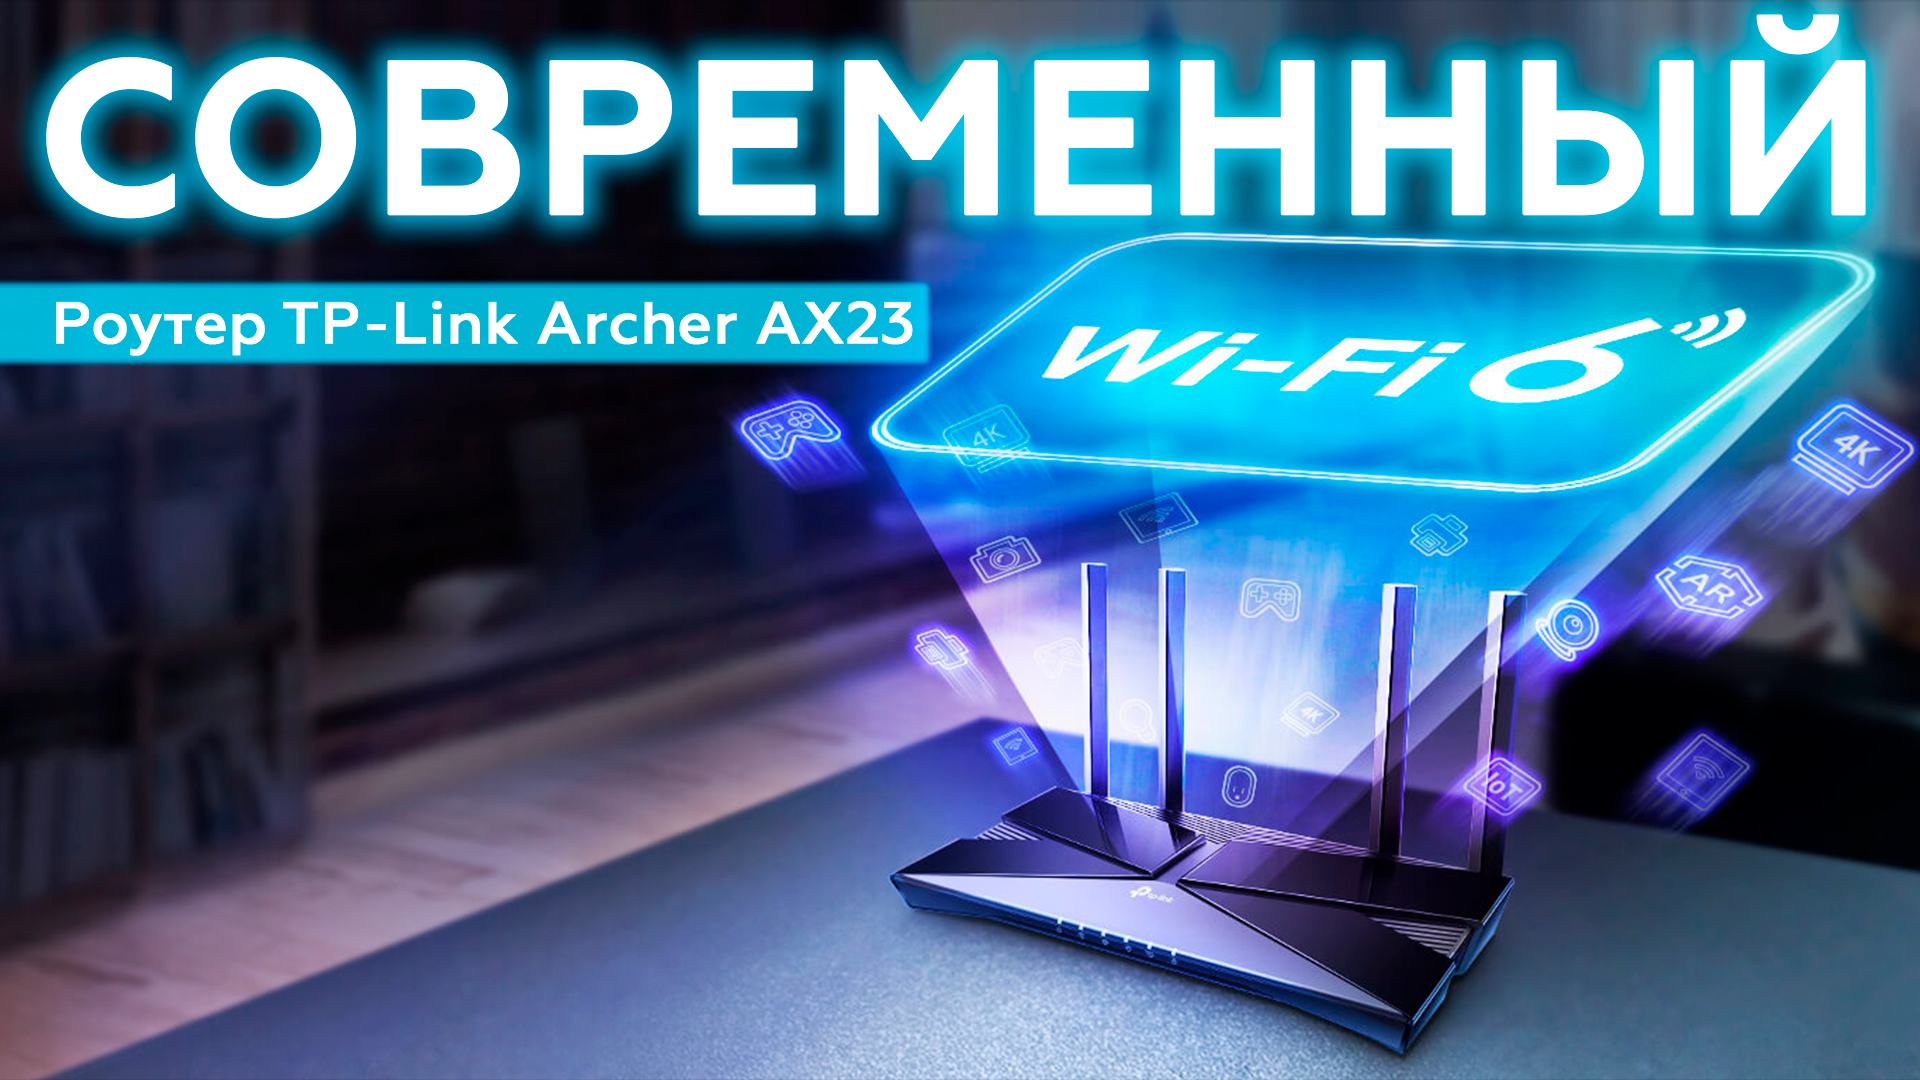 Роутер TP-Link Archer AX23 с поддержкой Wi-Fi 6